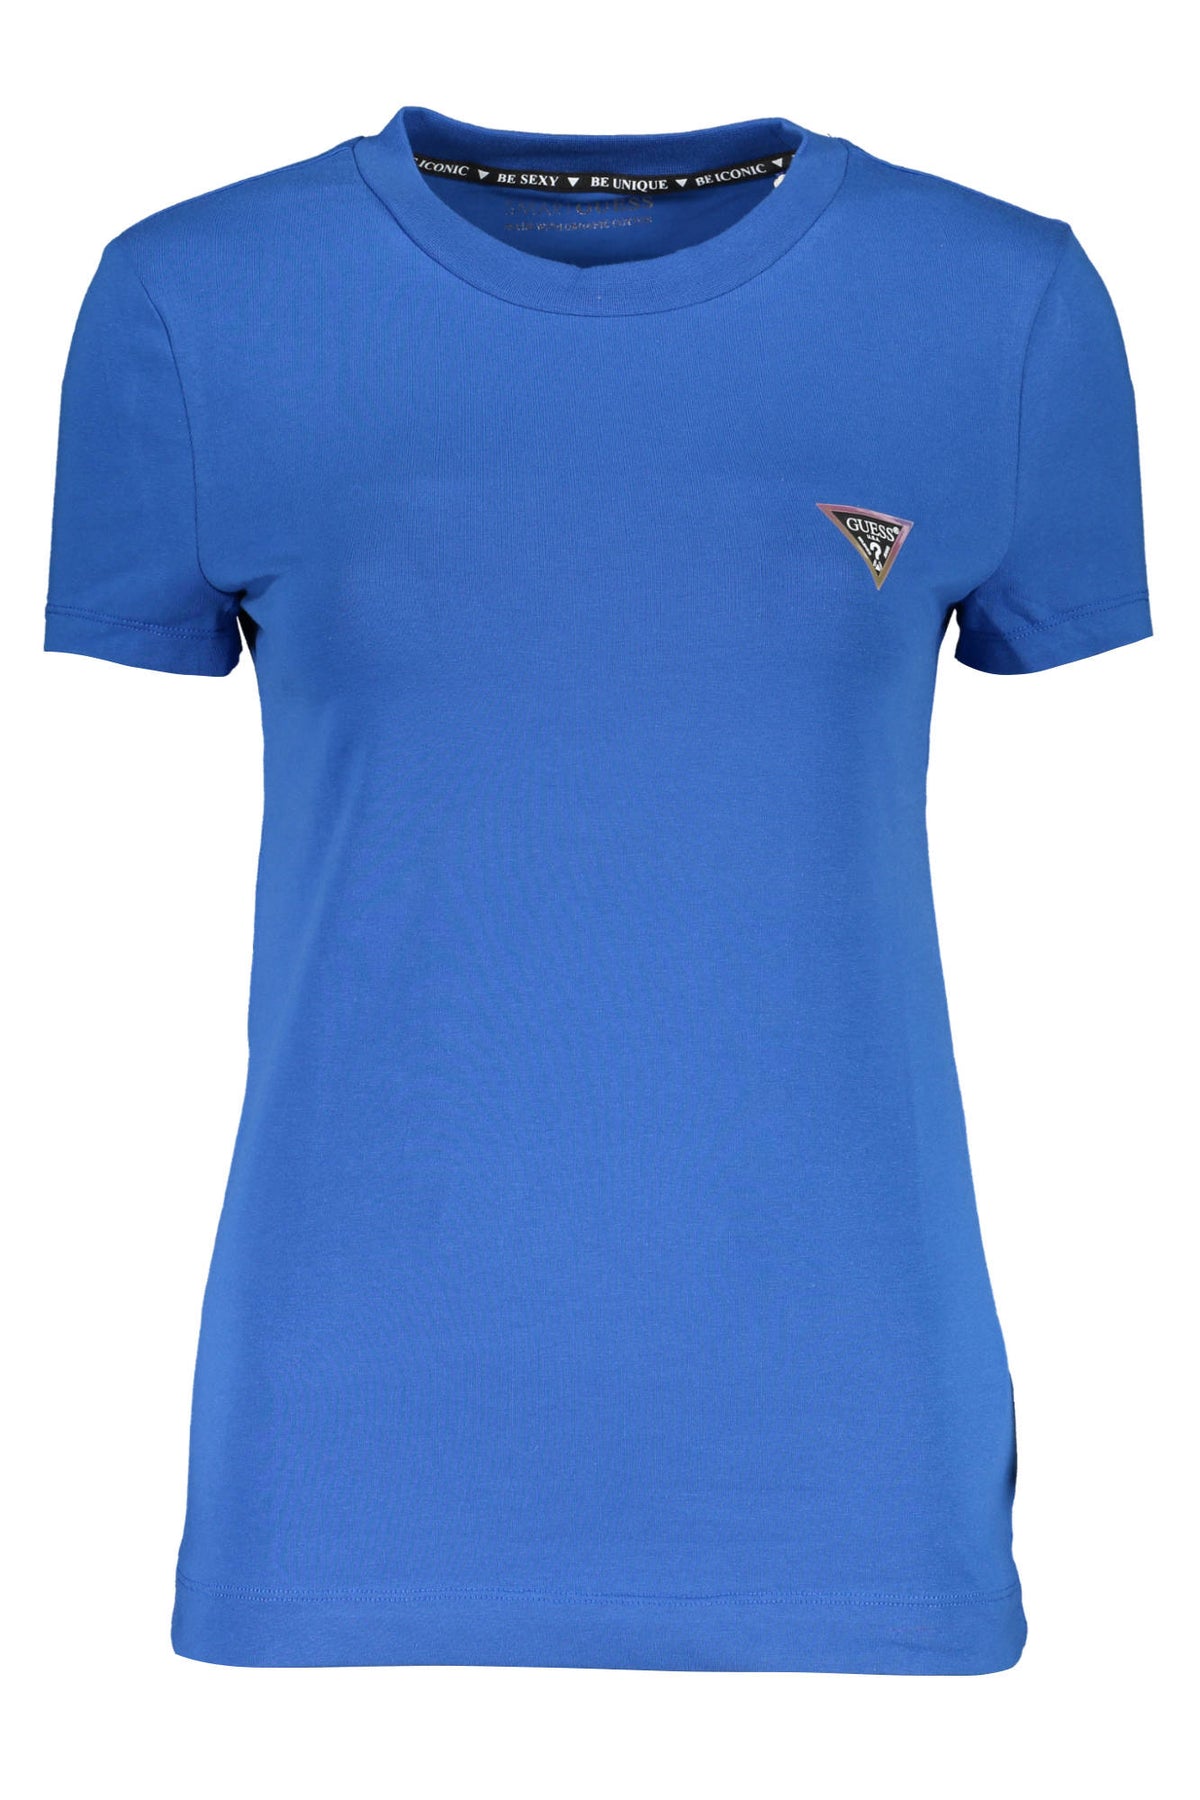 GUESS JEANS Damen T-Shirt Shirt Sweatshirt Oberteil mit Rundhalsausschnitt, kurzärmlig